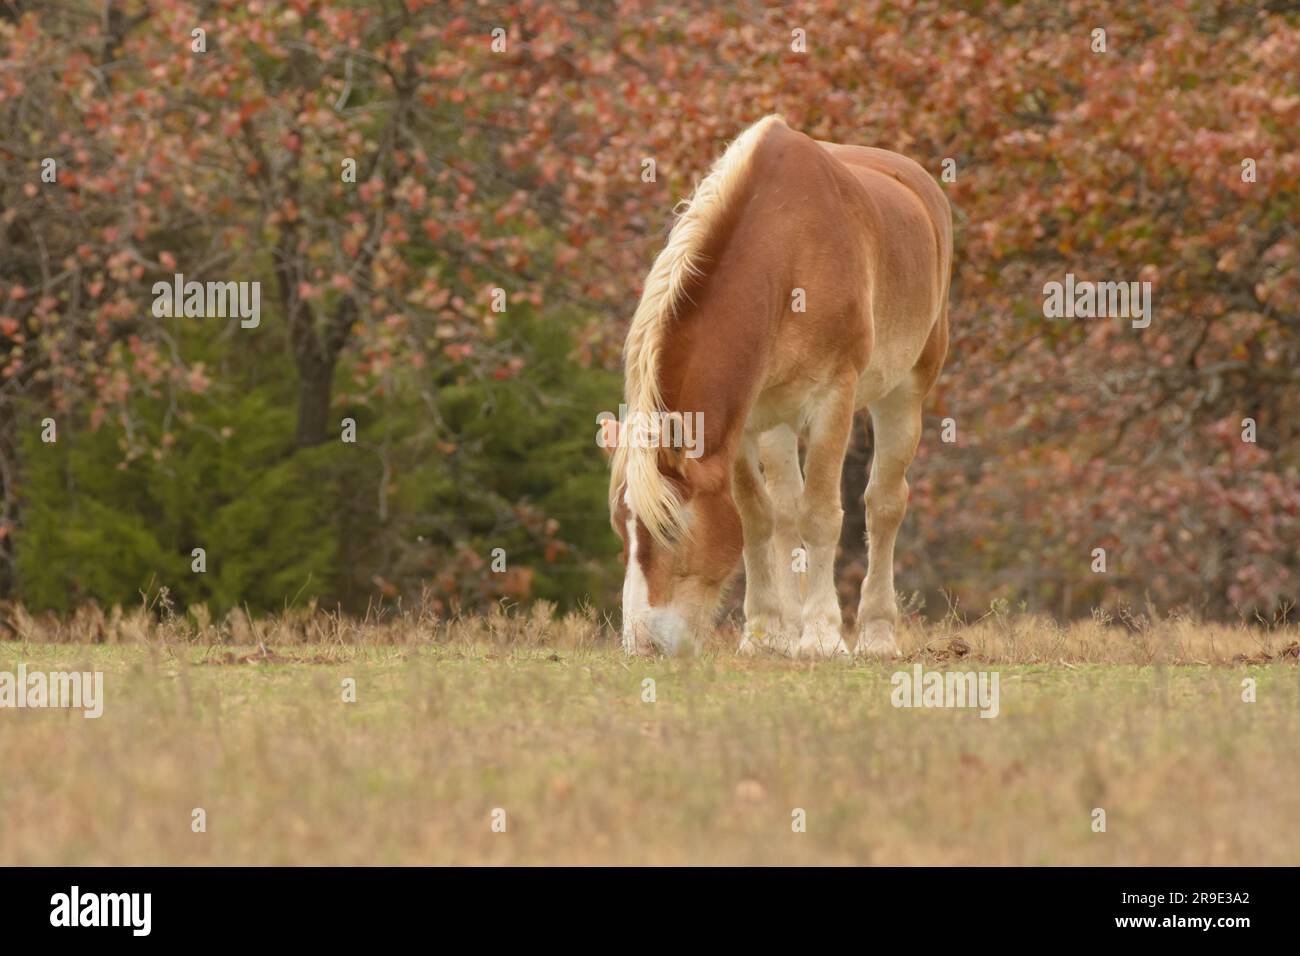 Un cheval de trait belge s'amuse sur l'herbe dans un pâturage d'automne, avec des arbres aux couleurs d'automne derrière lui Banque D'Images